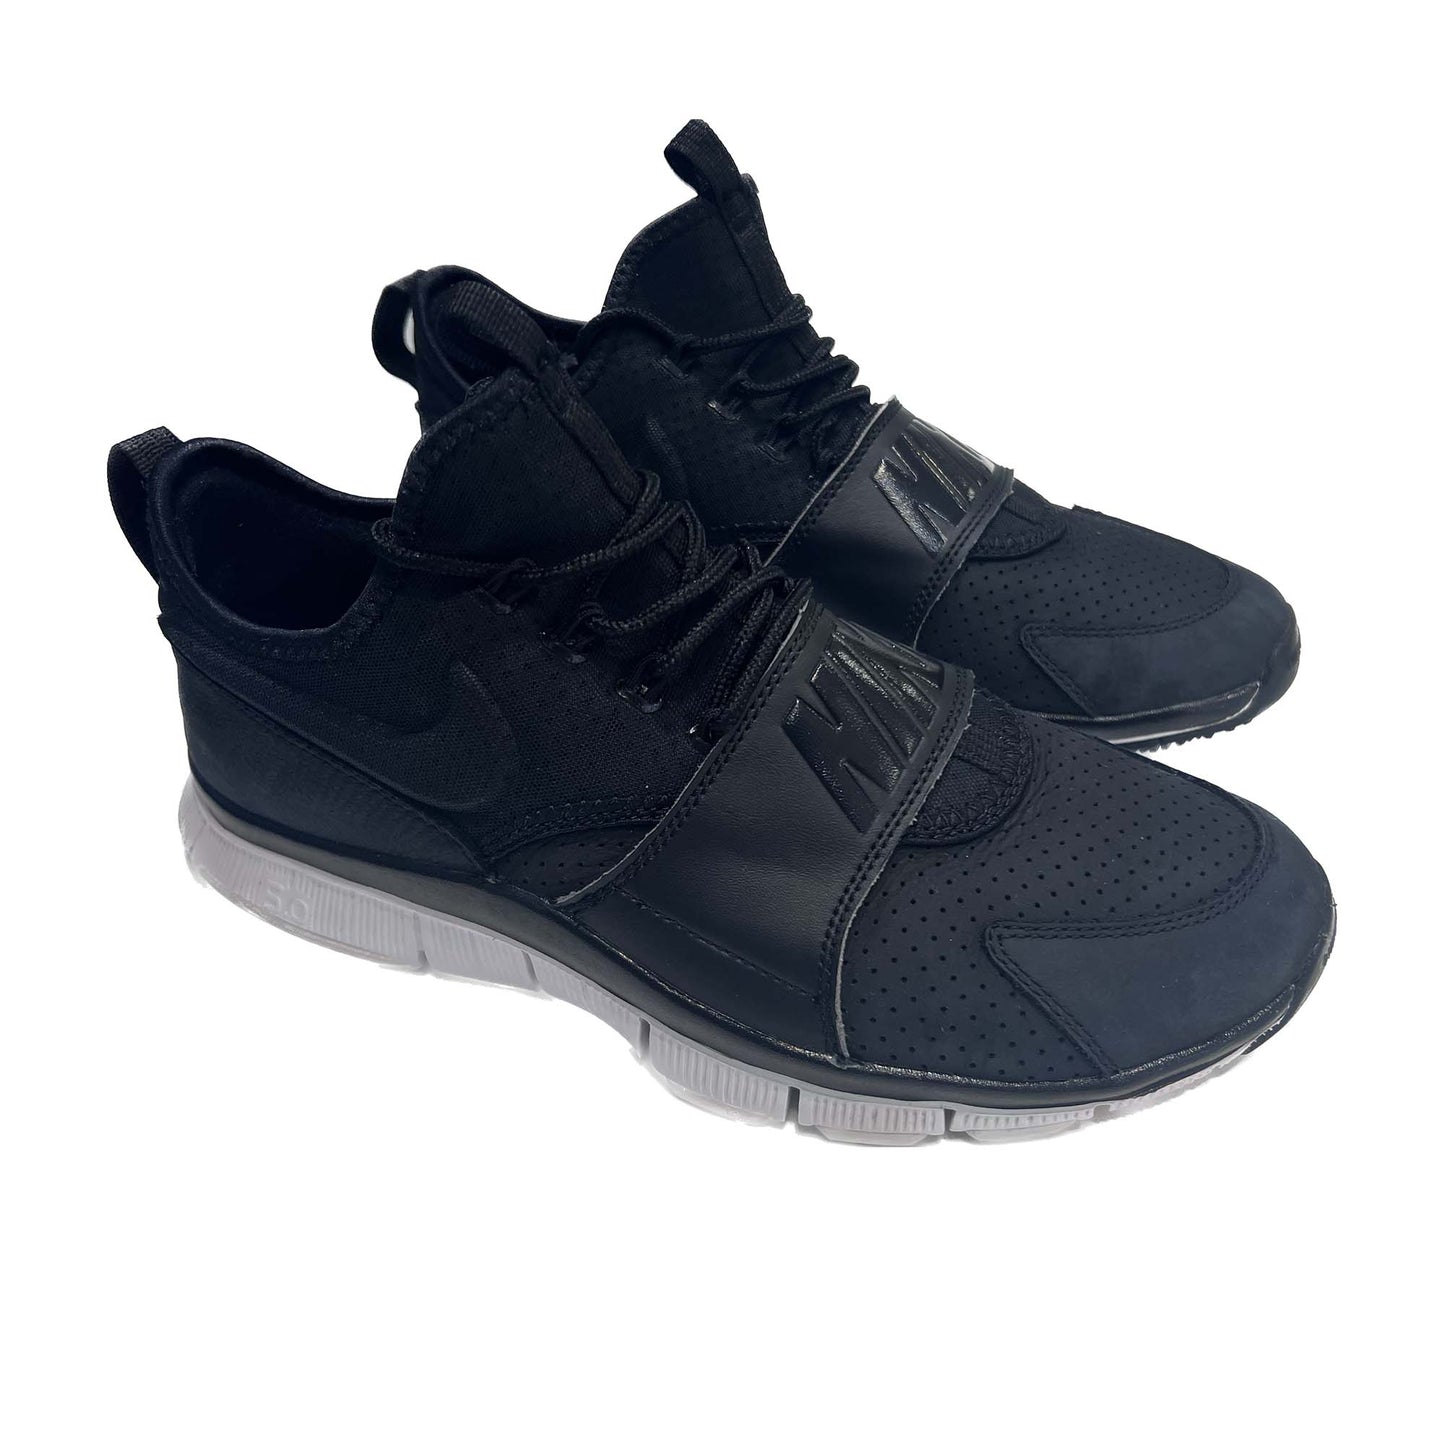 Nike Free ace "Leather Black" UK8.5 *ReNew